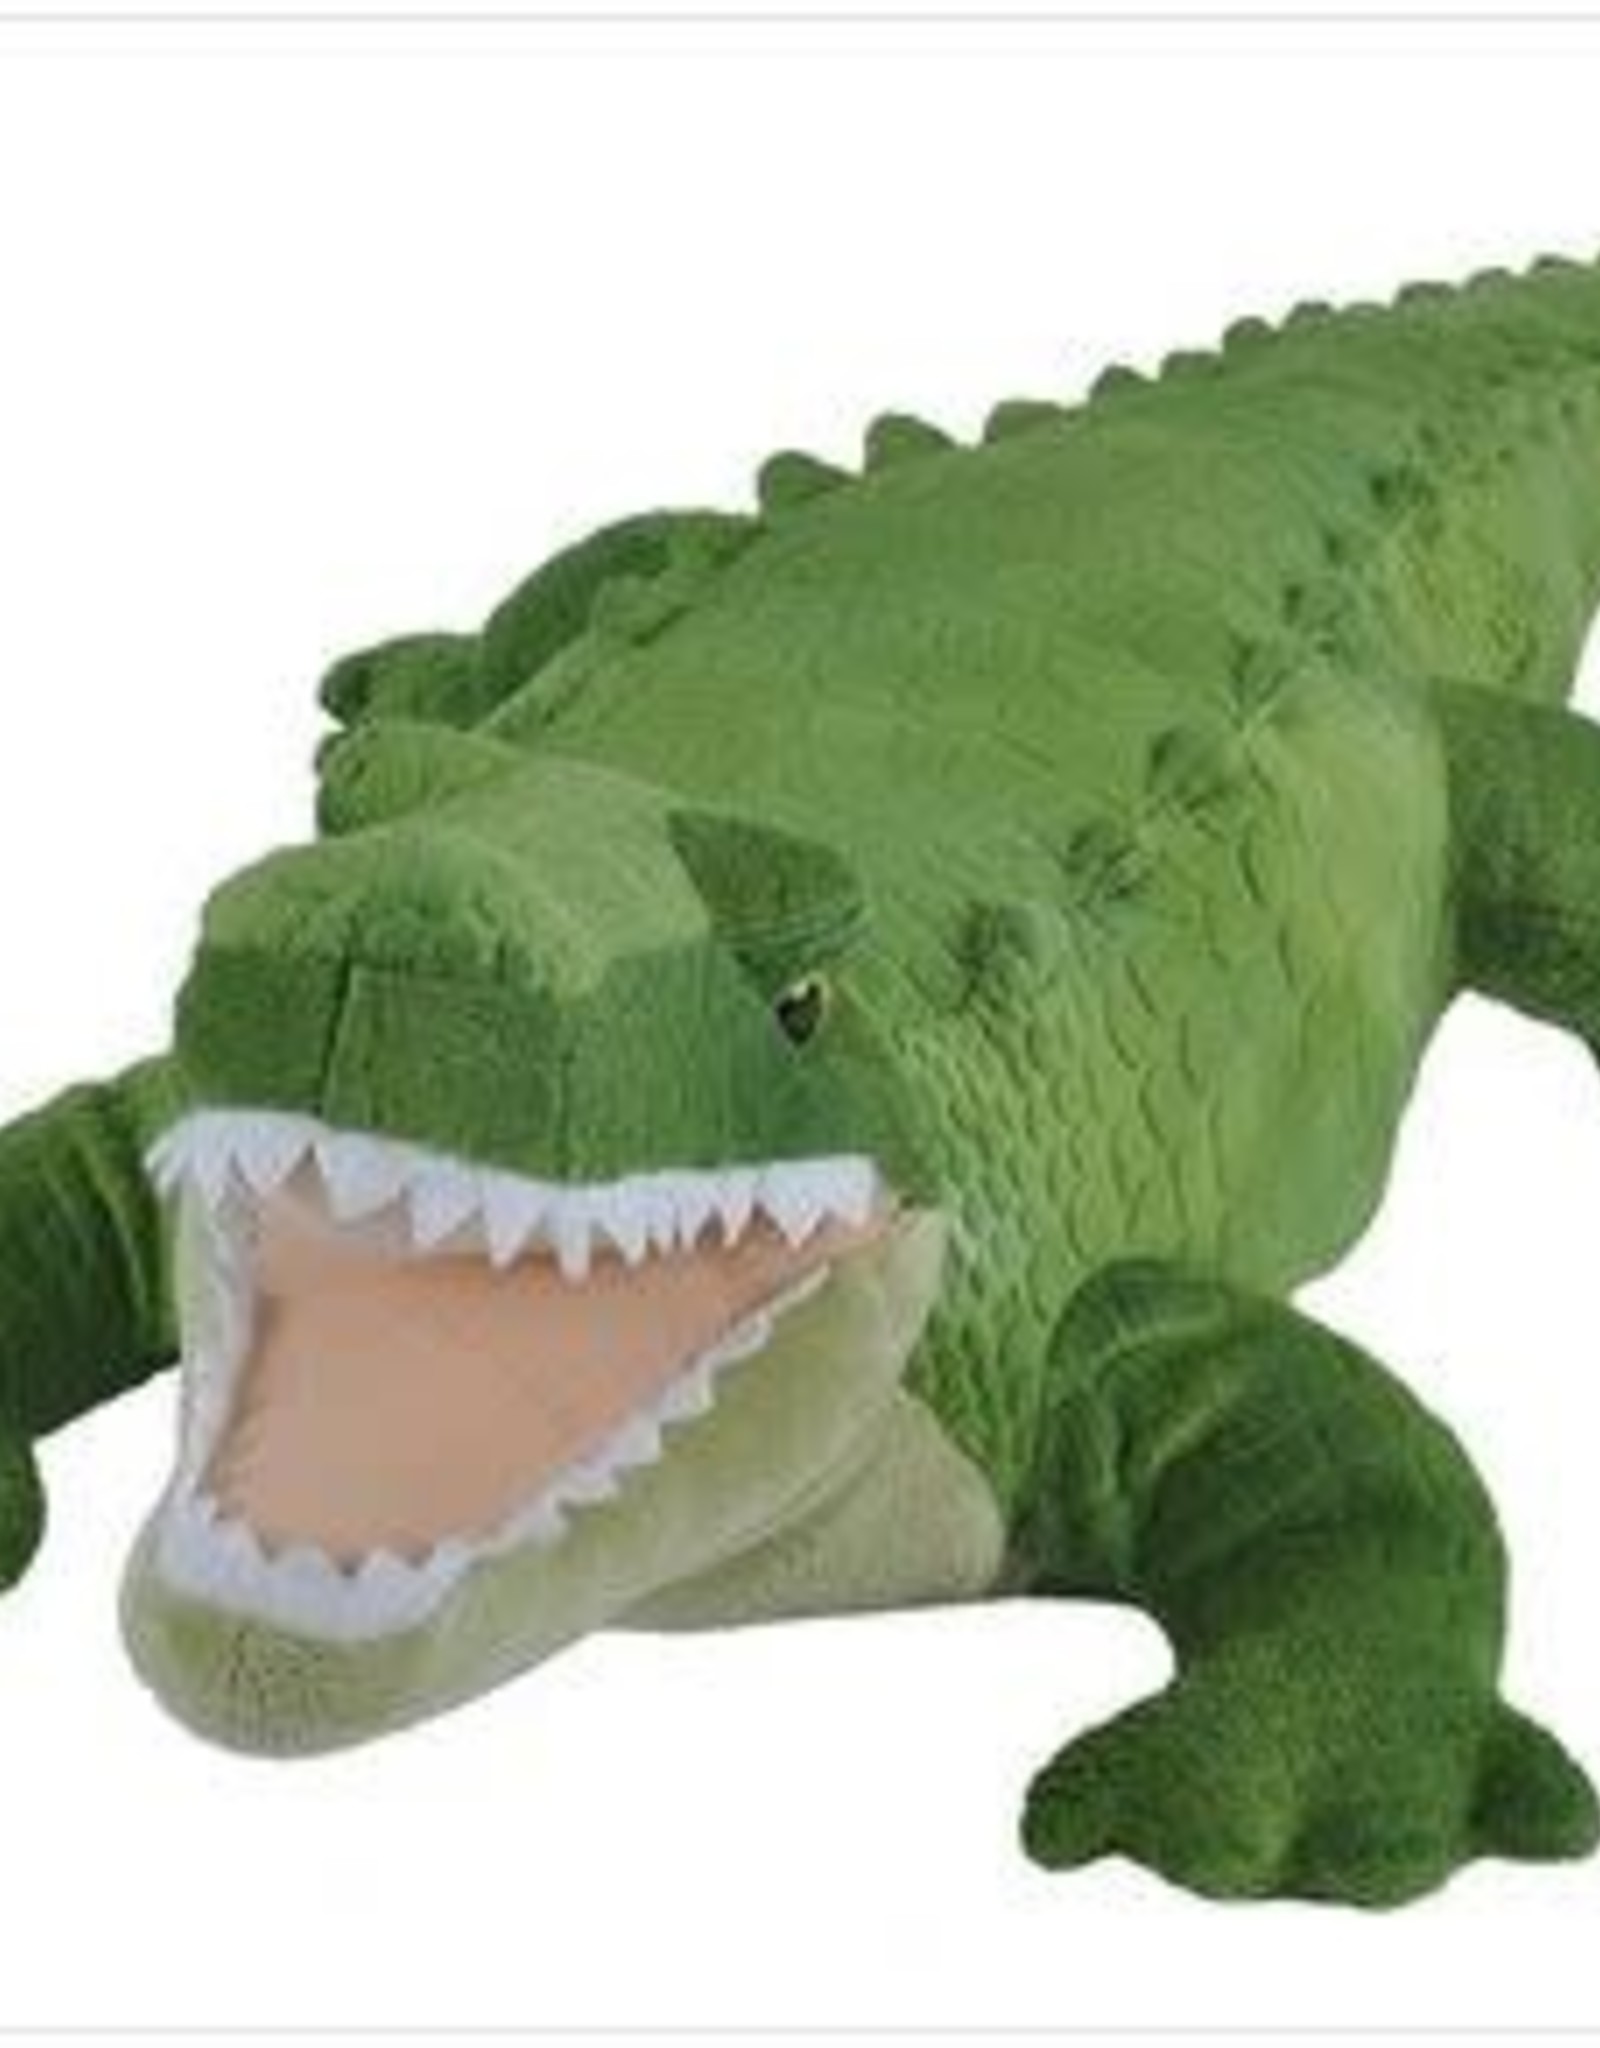 alligator stuffed animal